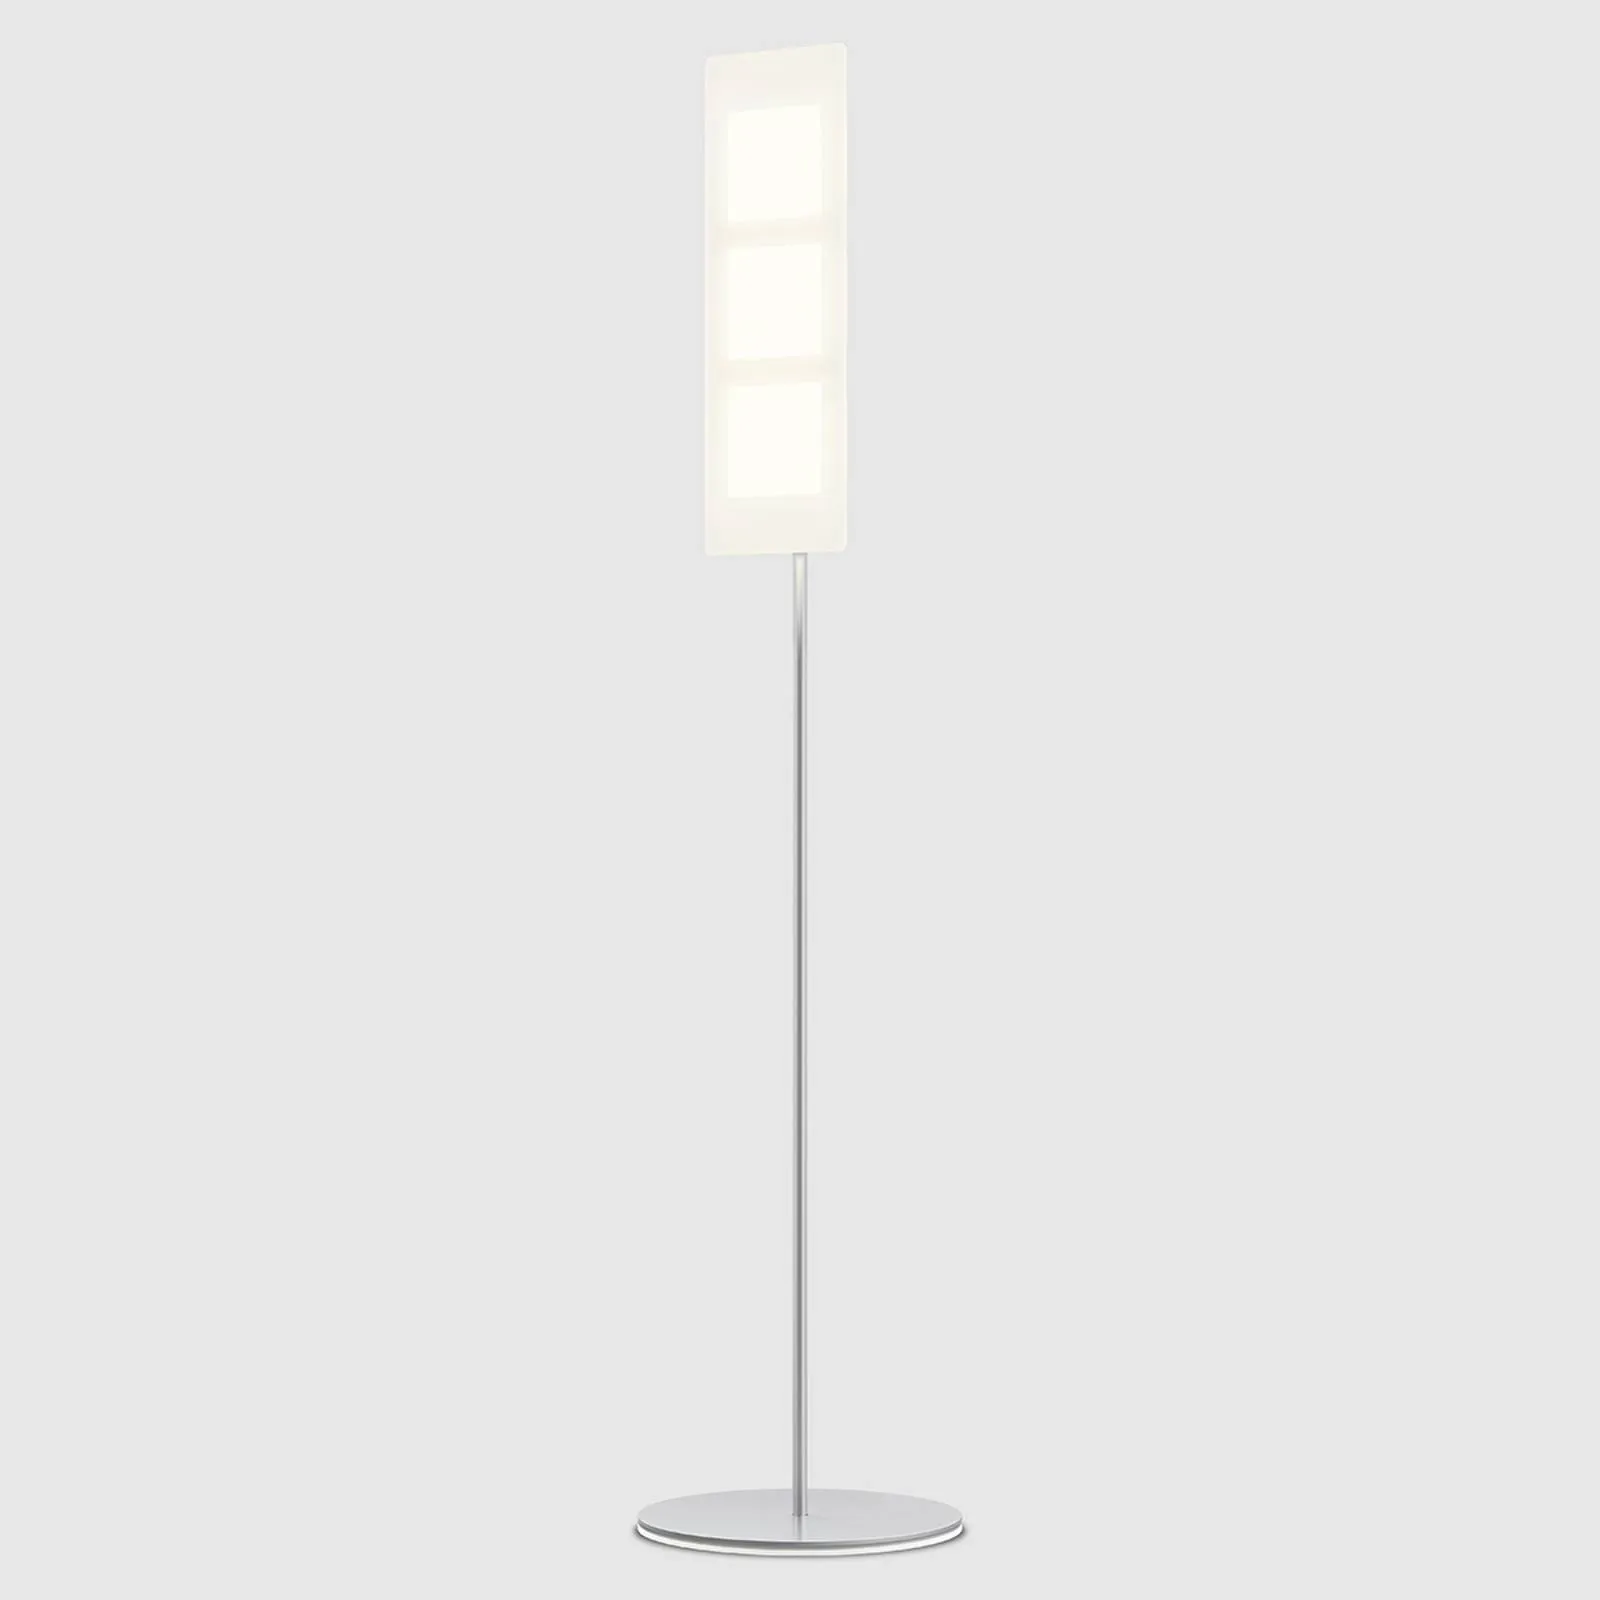 OMLED One f3 - OLED floor lamp in white